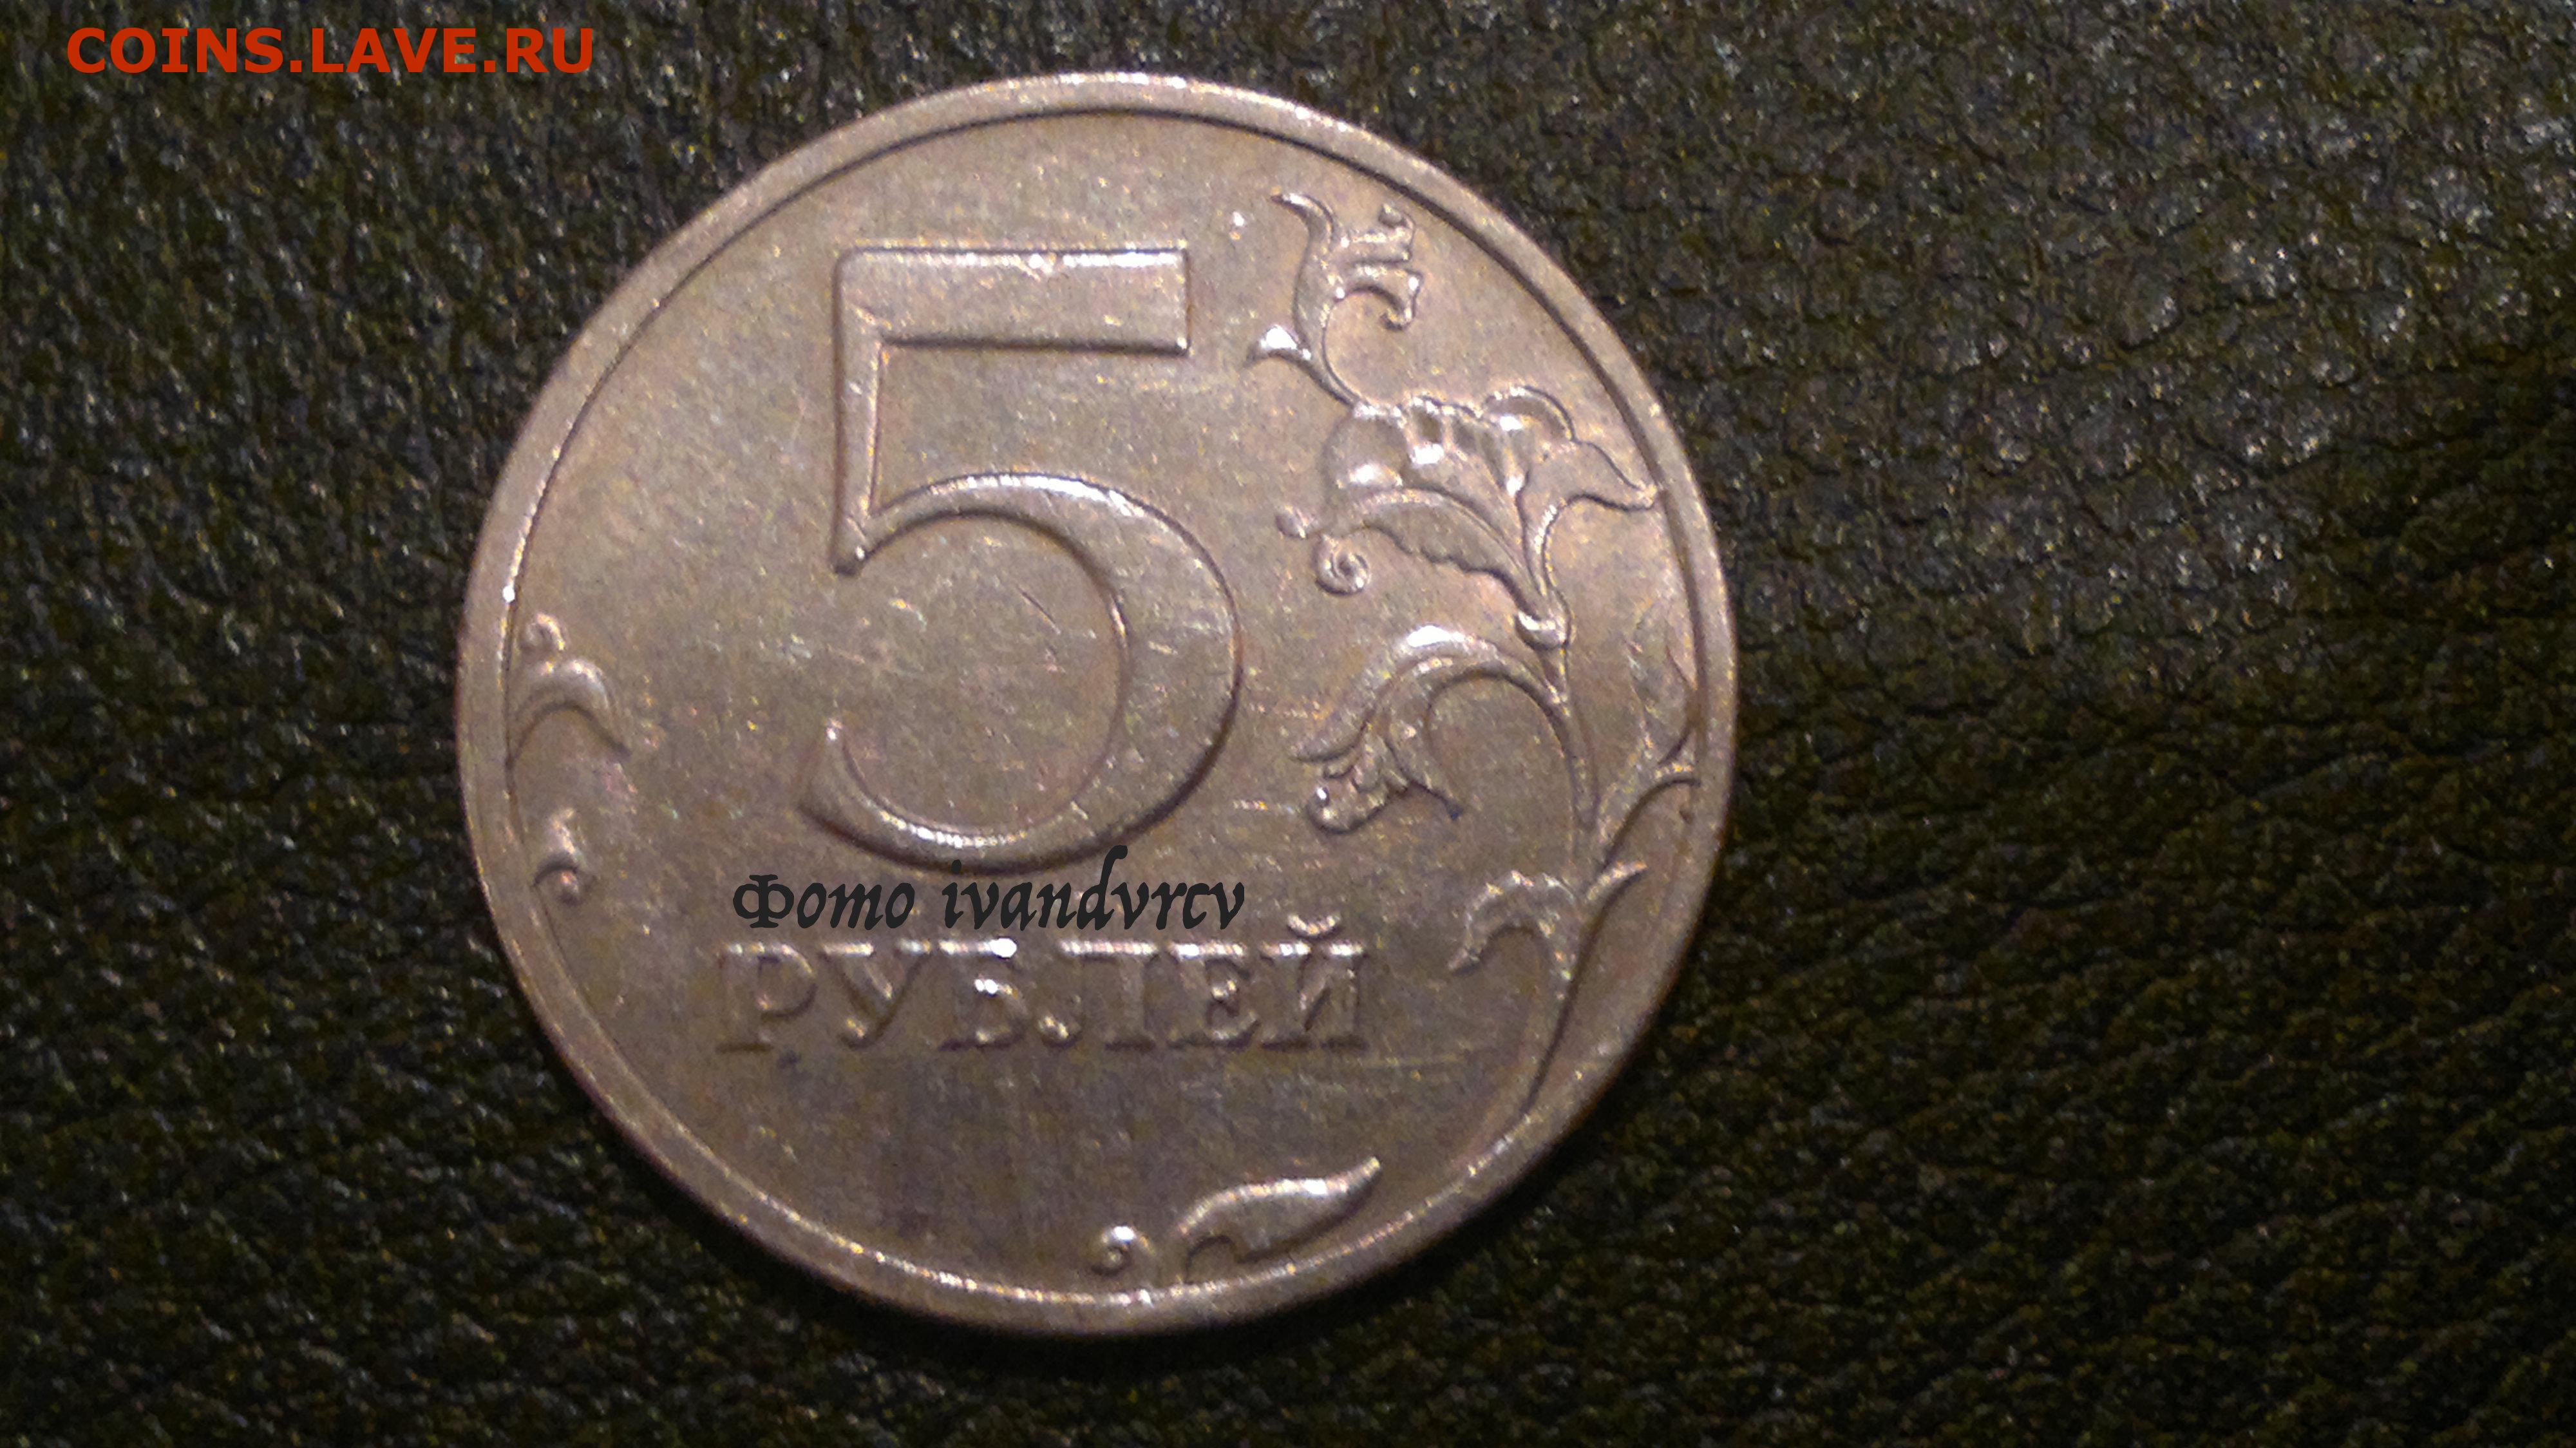 5 рублей 11 года. 5 Рублей 1997 СПМД. 5 Рублей 1997 СПМД шт 3. 5 Рублей 1997 СПМД штемпель 2.3. 5 Рублей 1997 штемпель 2.3 (с малой точкой).